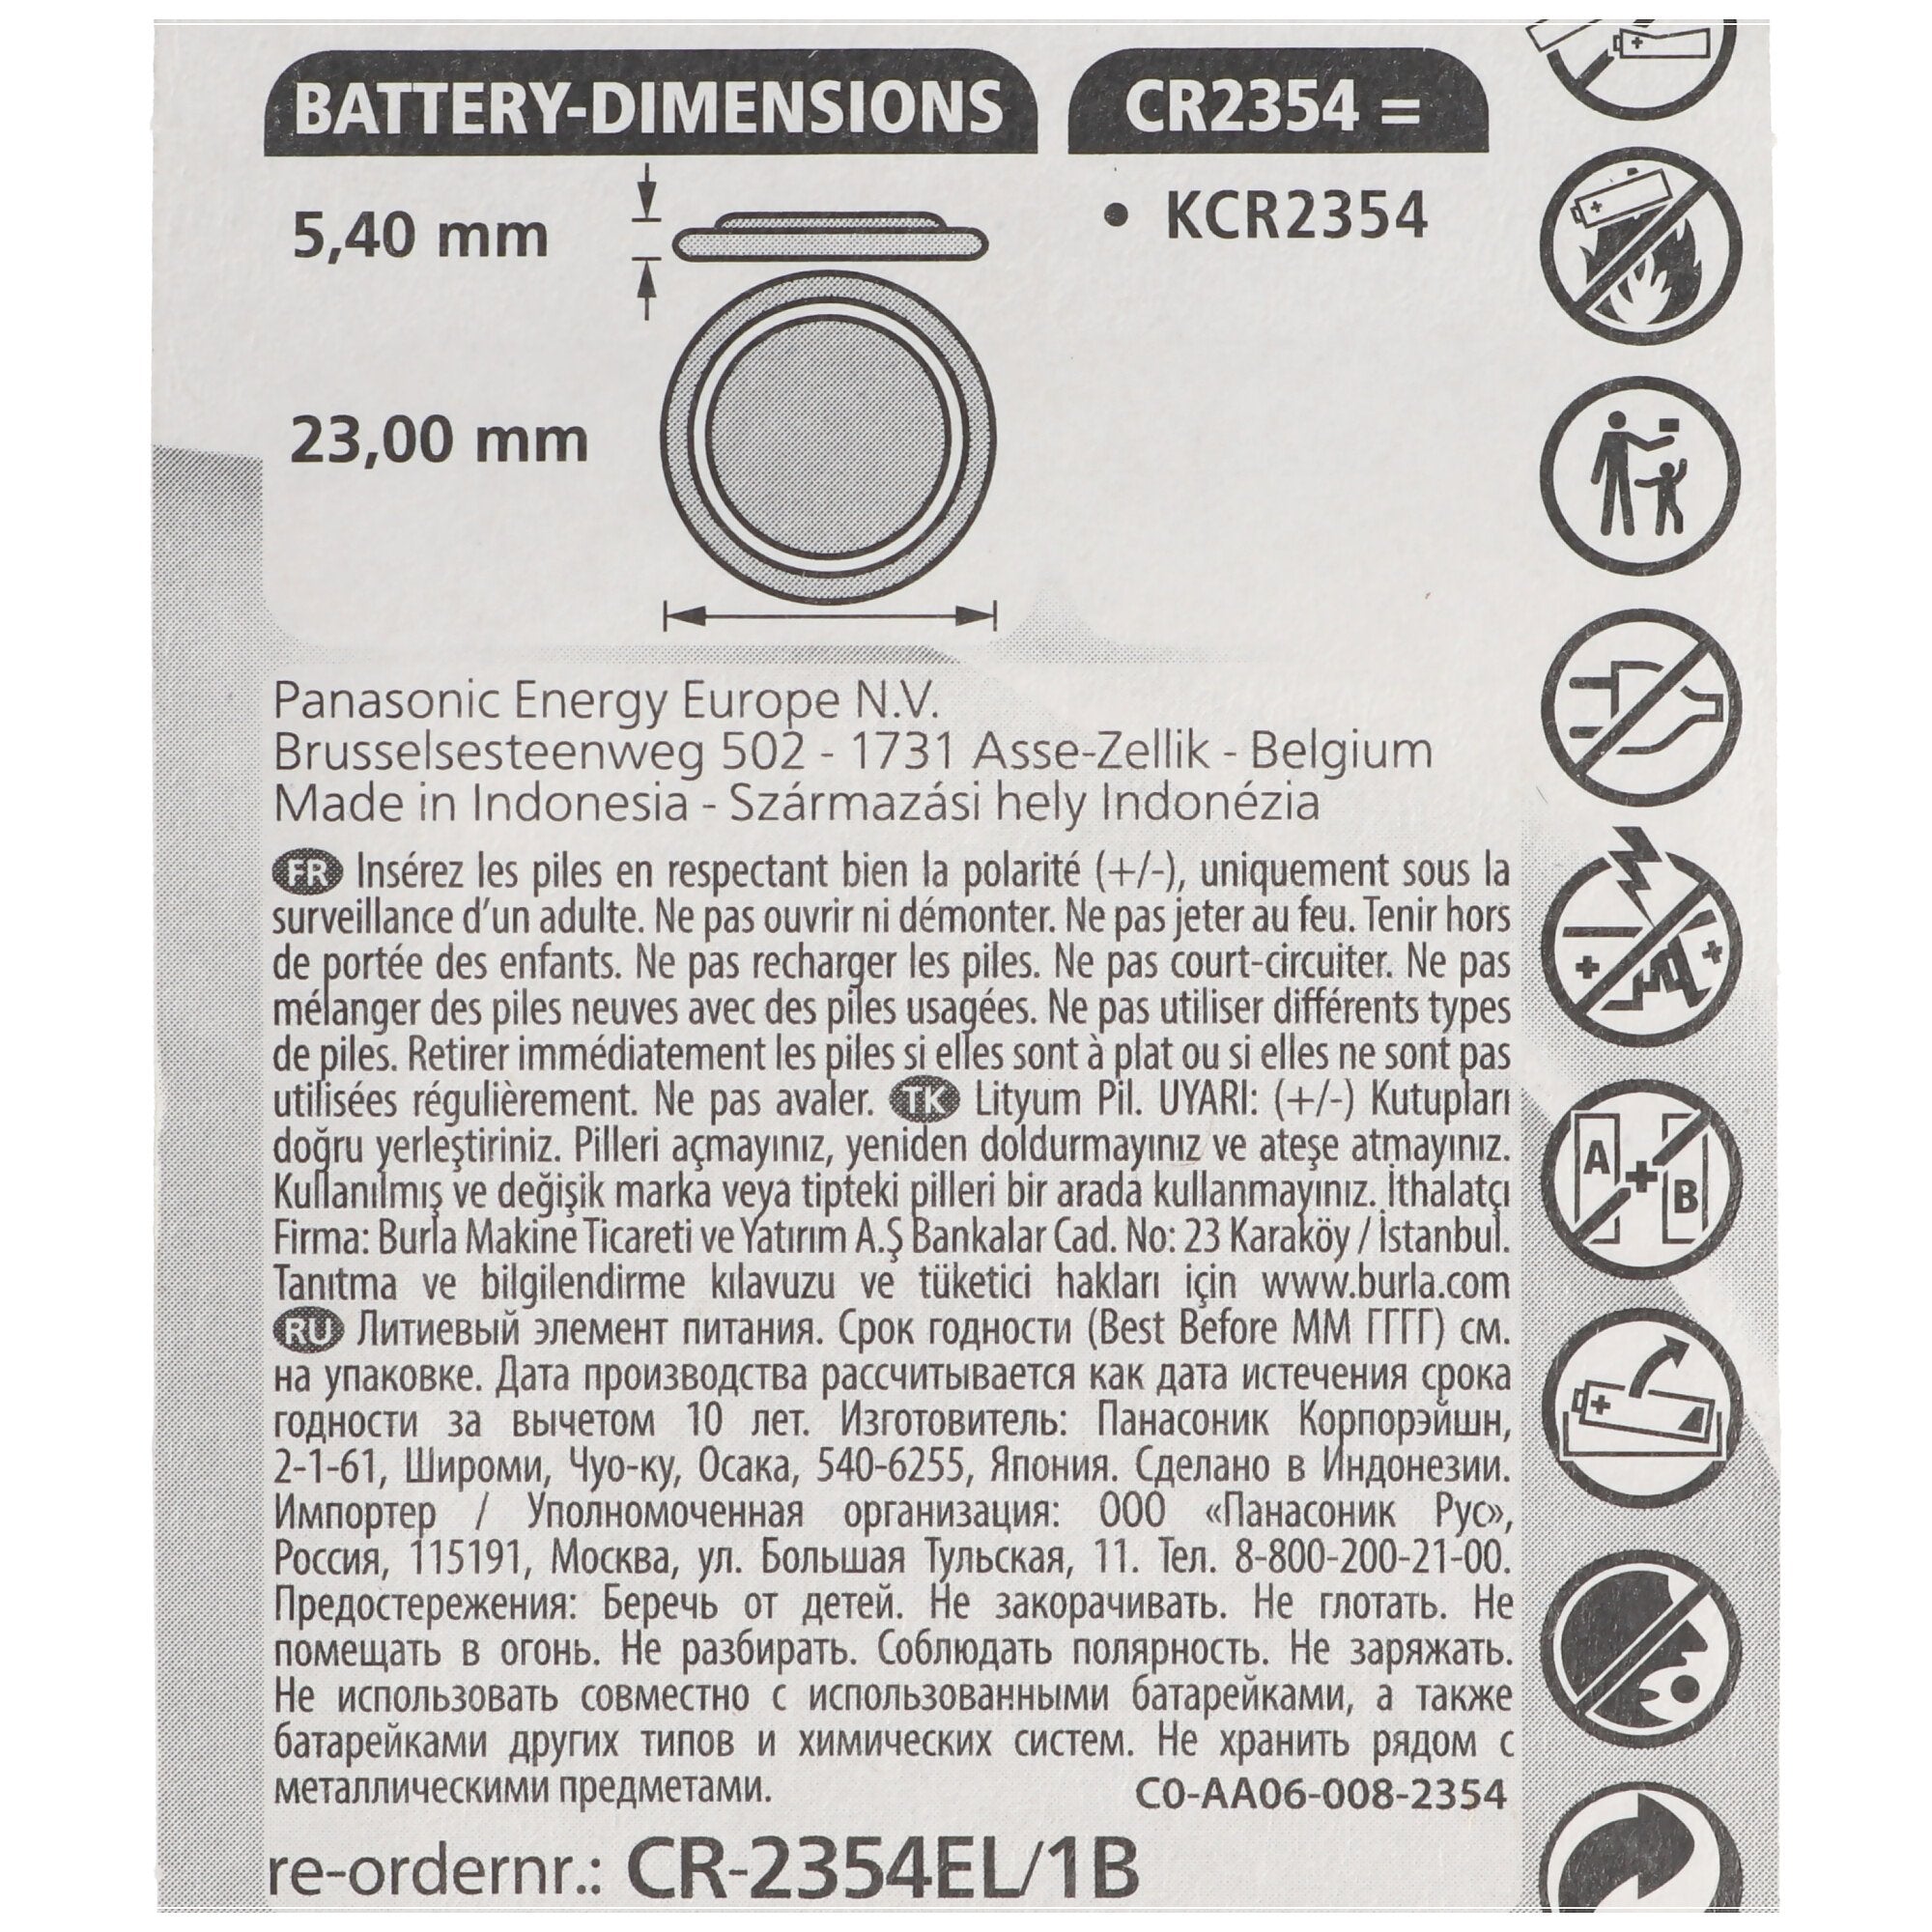 Panasonic CR2354 lithiumbatterij met uitsparing op de negatieve pool